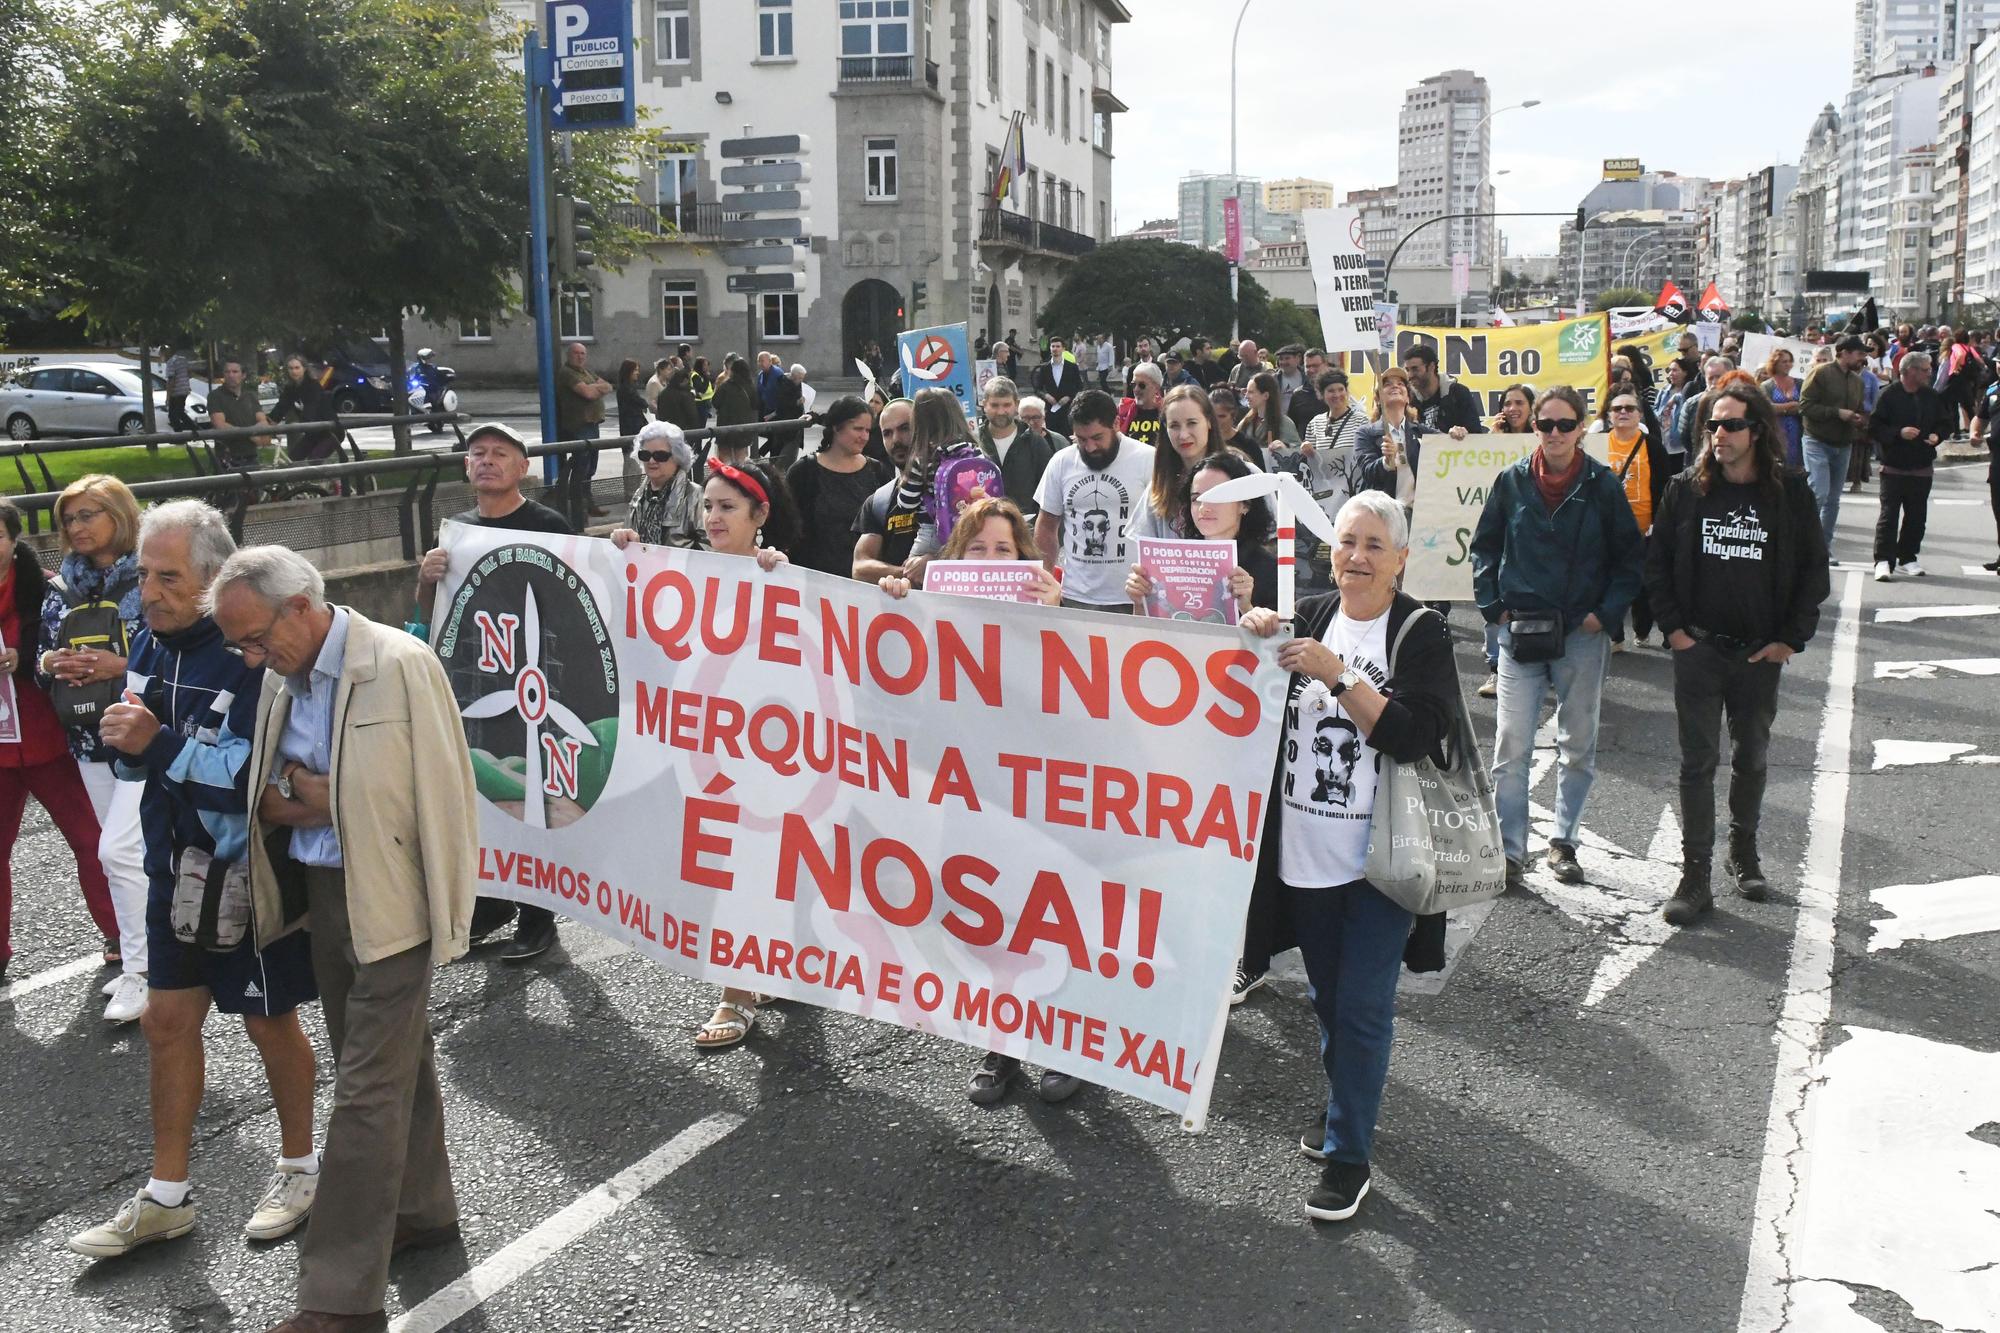 Manifestación en A Coruña contra los parques eólicos